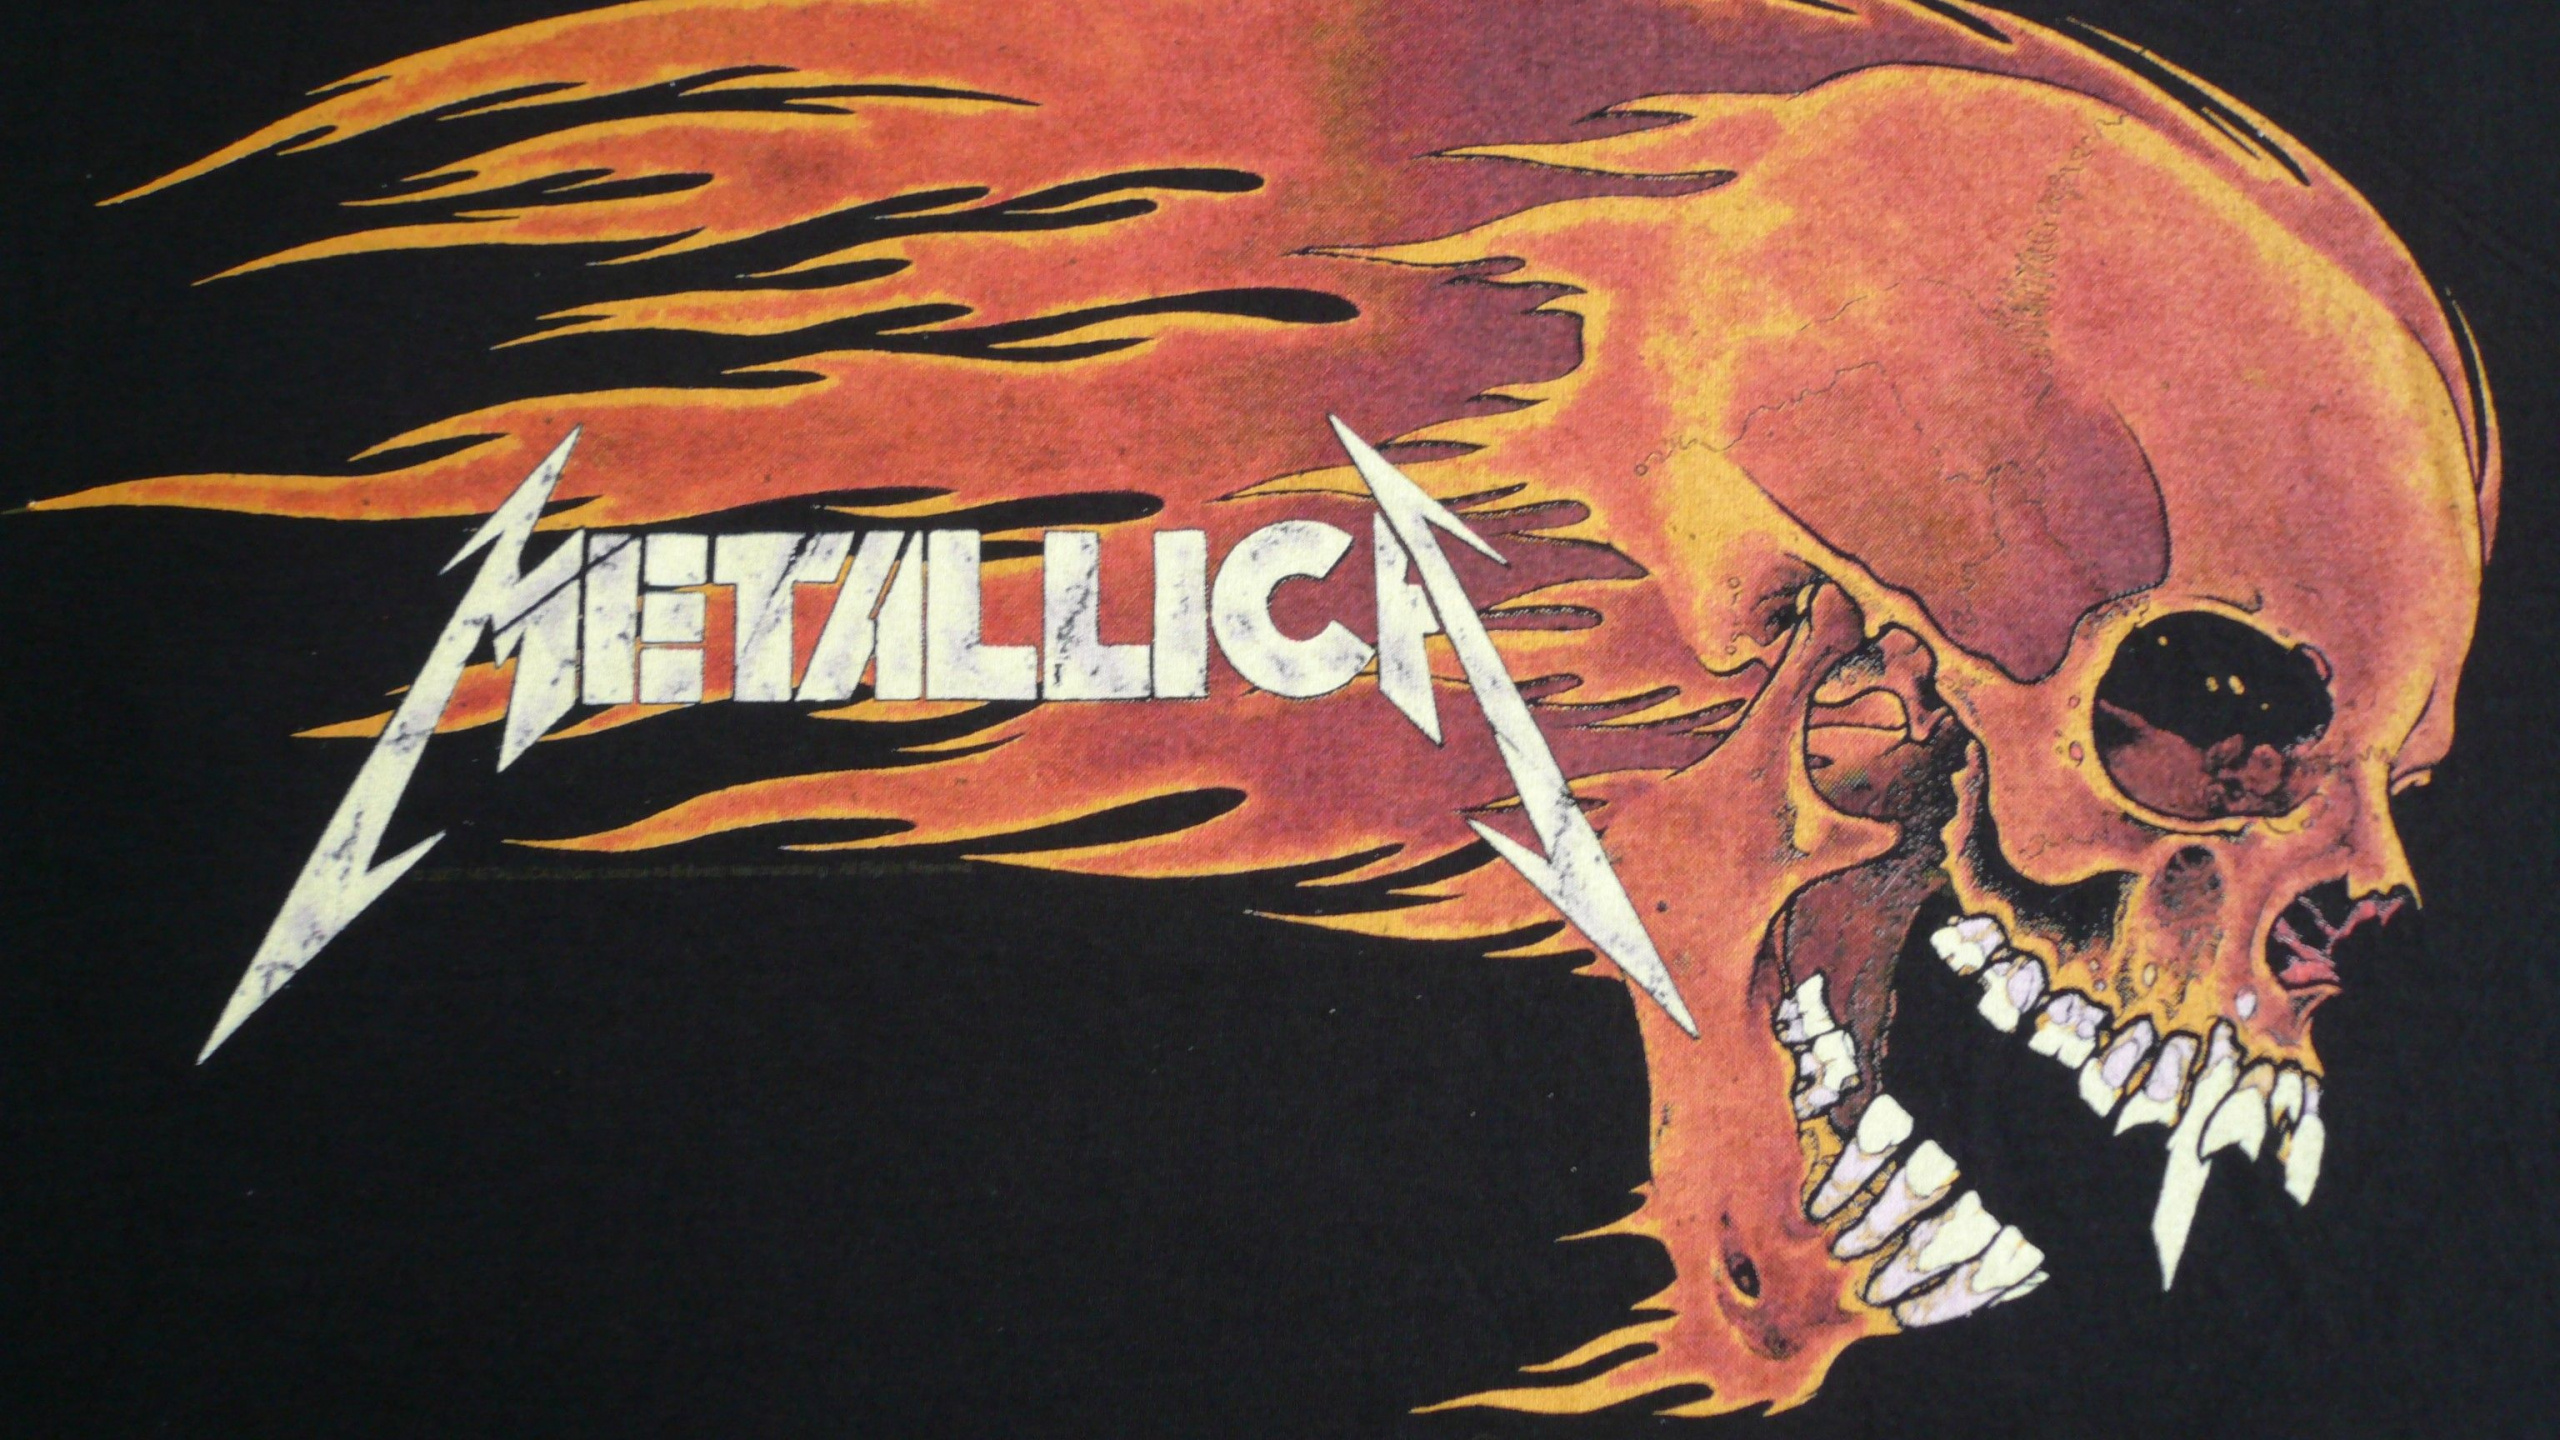 Metallica, 重金属, 头骨, 骨, 套 壁纸 2560x1440 允许